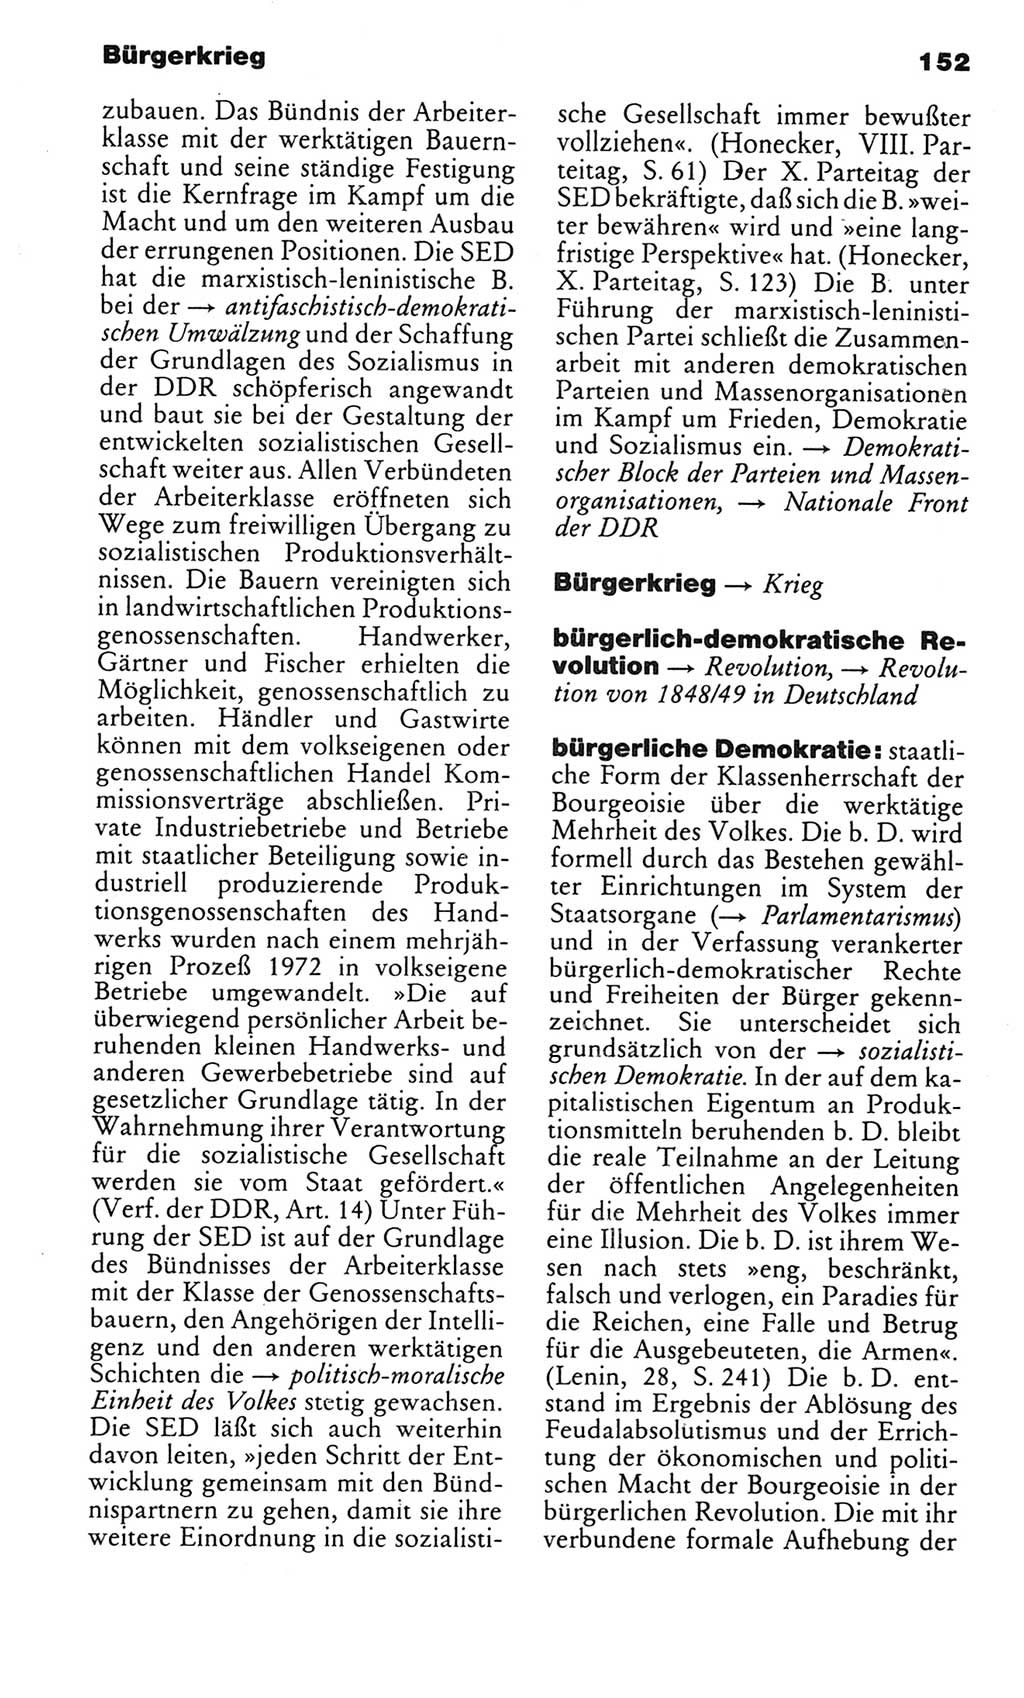 Kleines politisches Wörterbuch [Deutsche Demokratische Republik (DDR)] 1985, Seite 152 (Kl. pol. Wb. DDR 1985, S. 152)